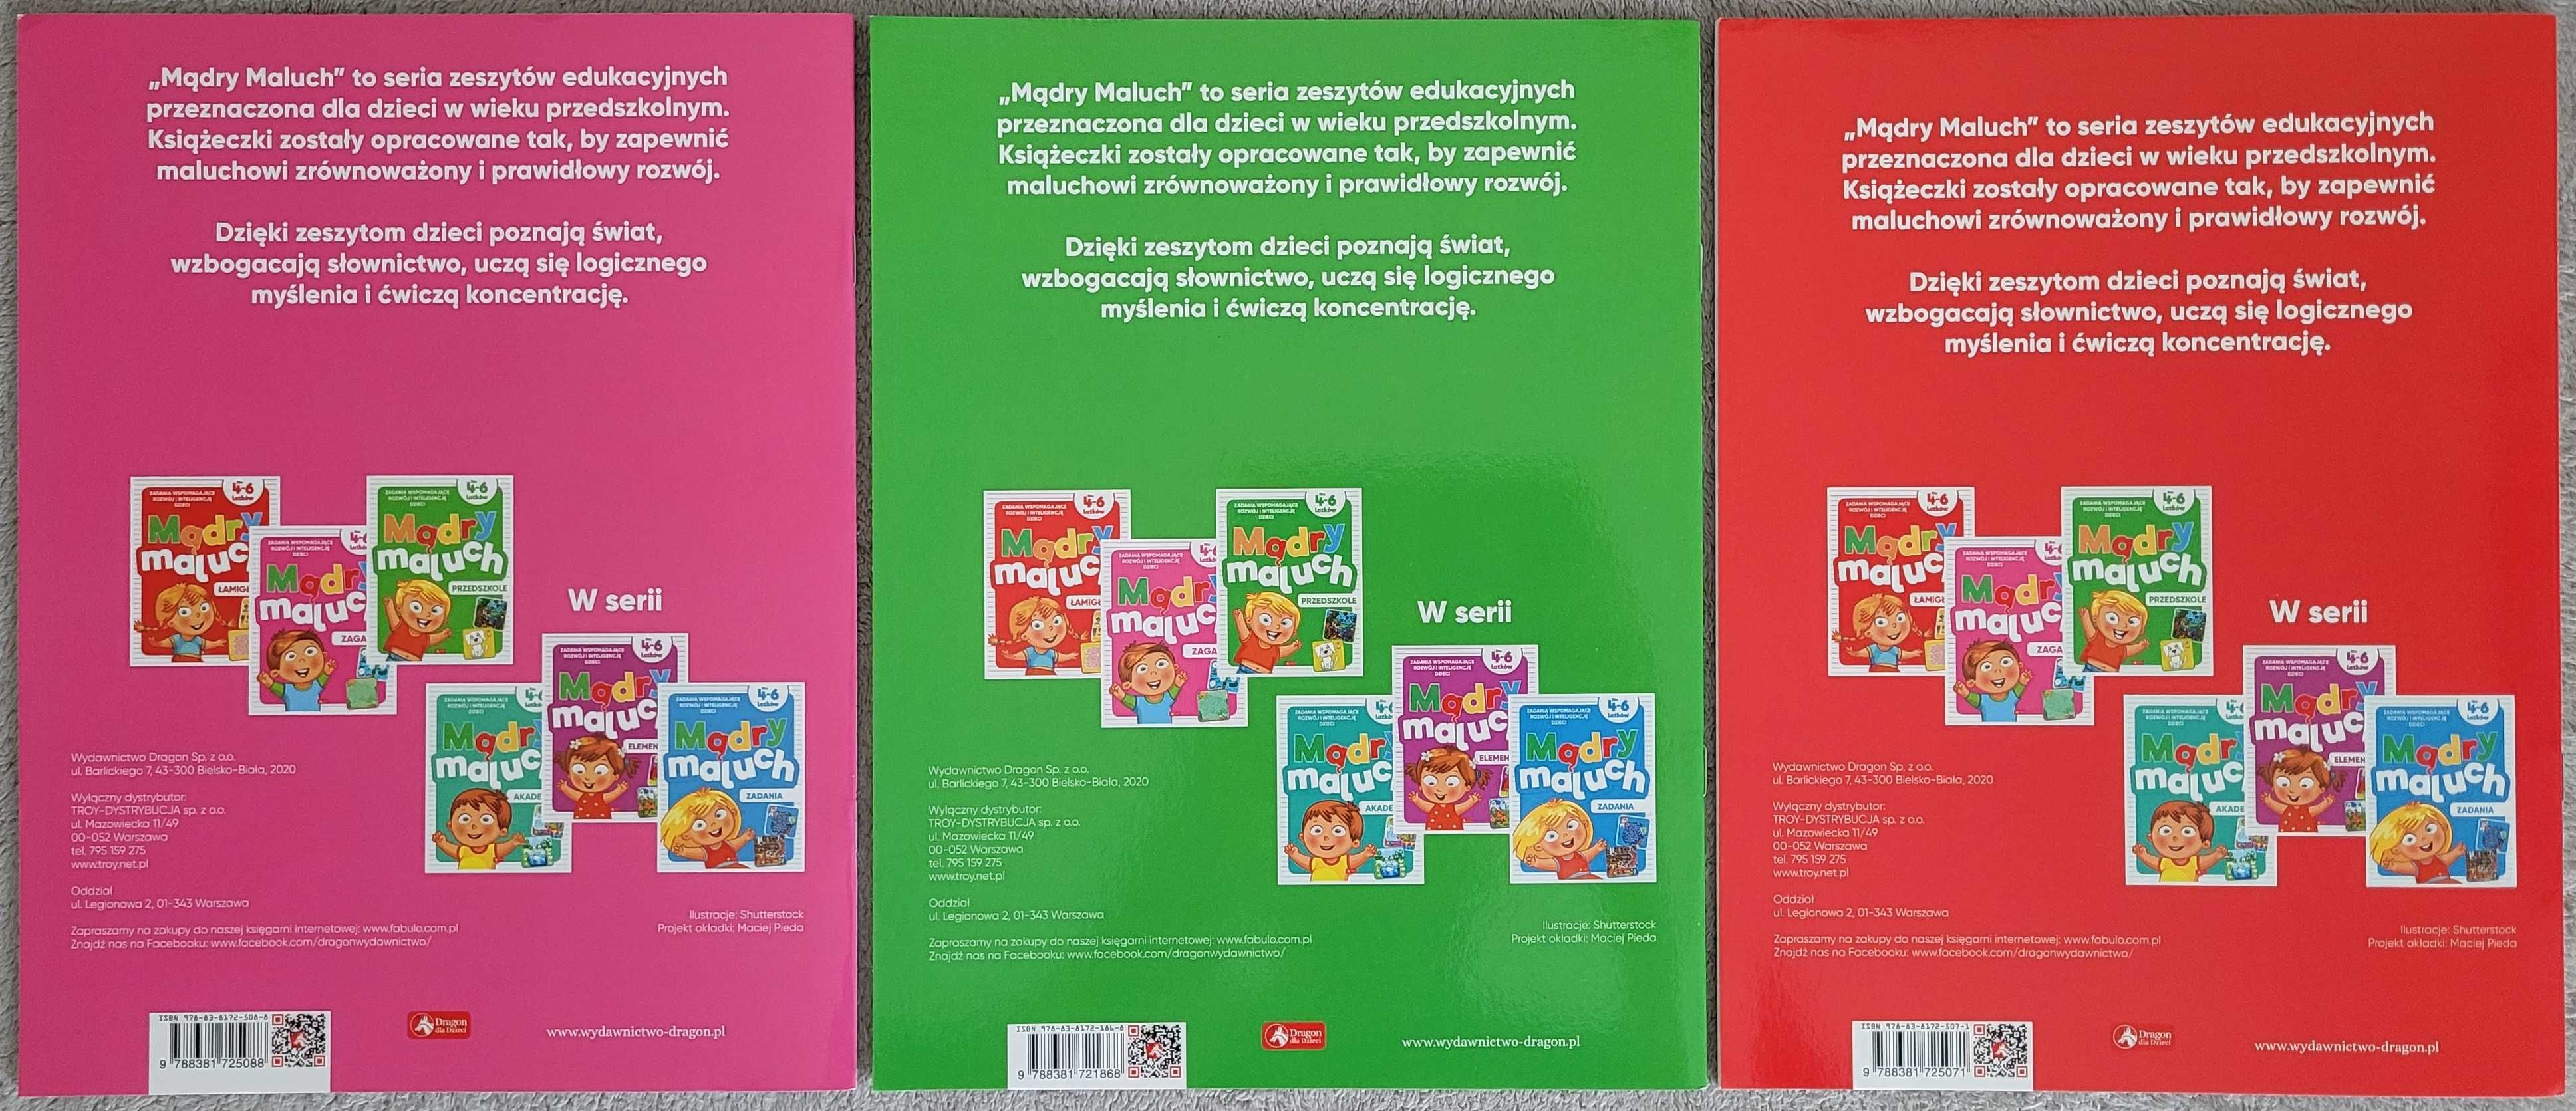 Książeczki dla dzieci Mądry maluch, 4-6 lat, 3 sztuki